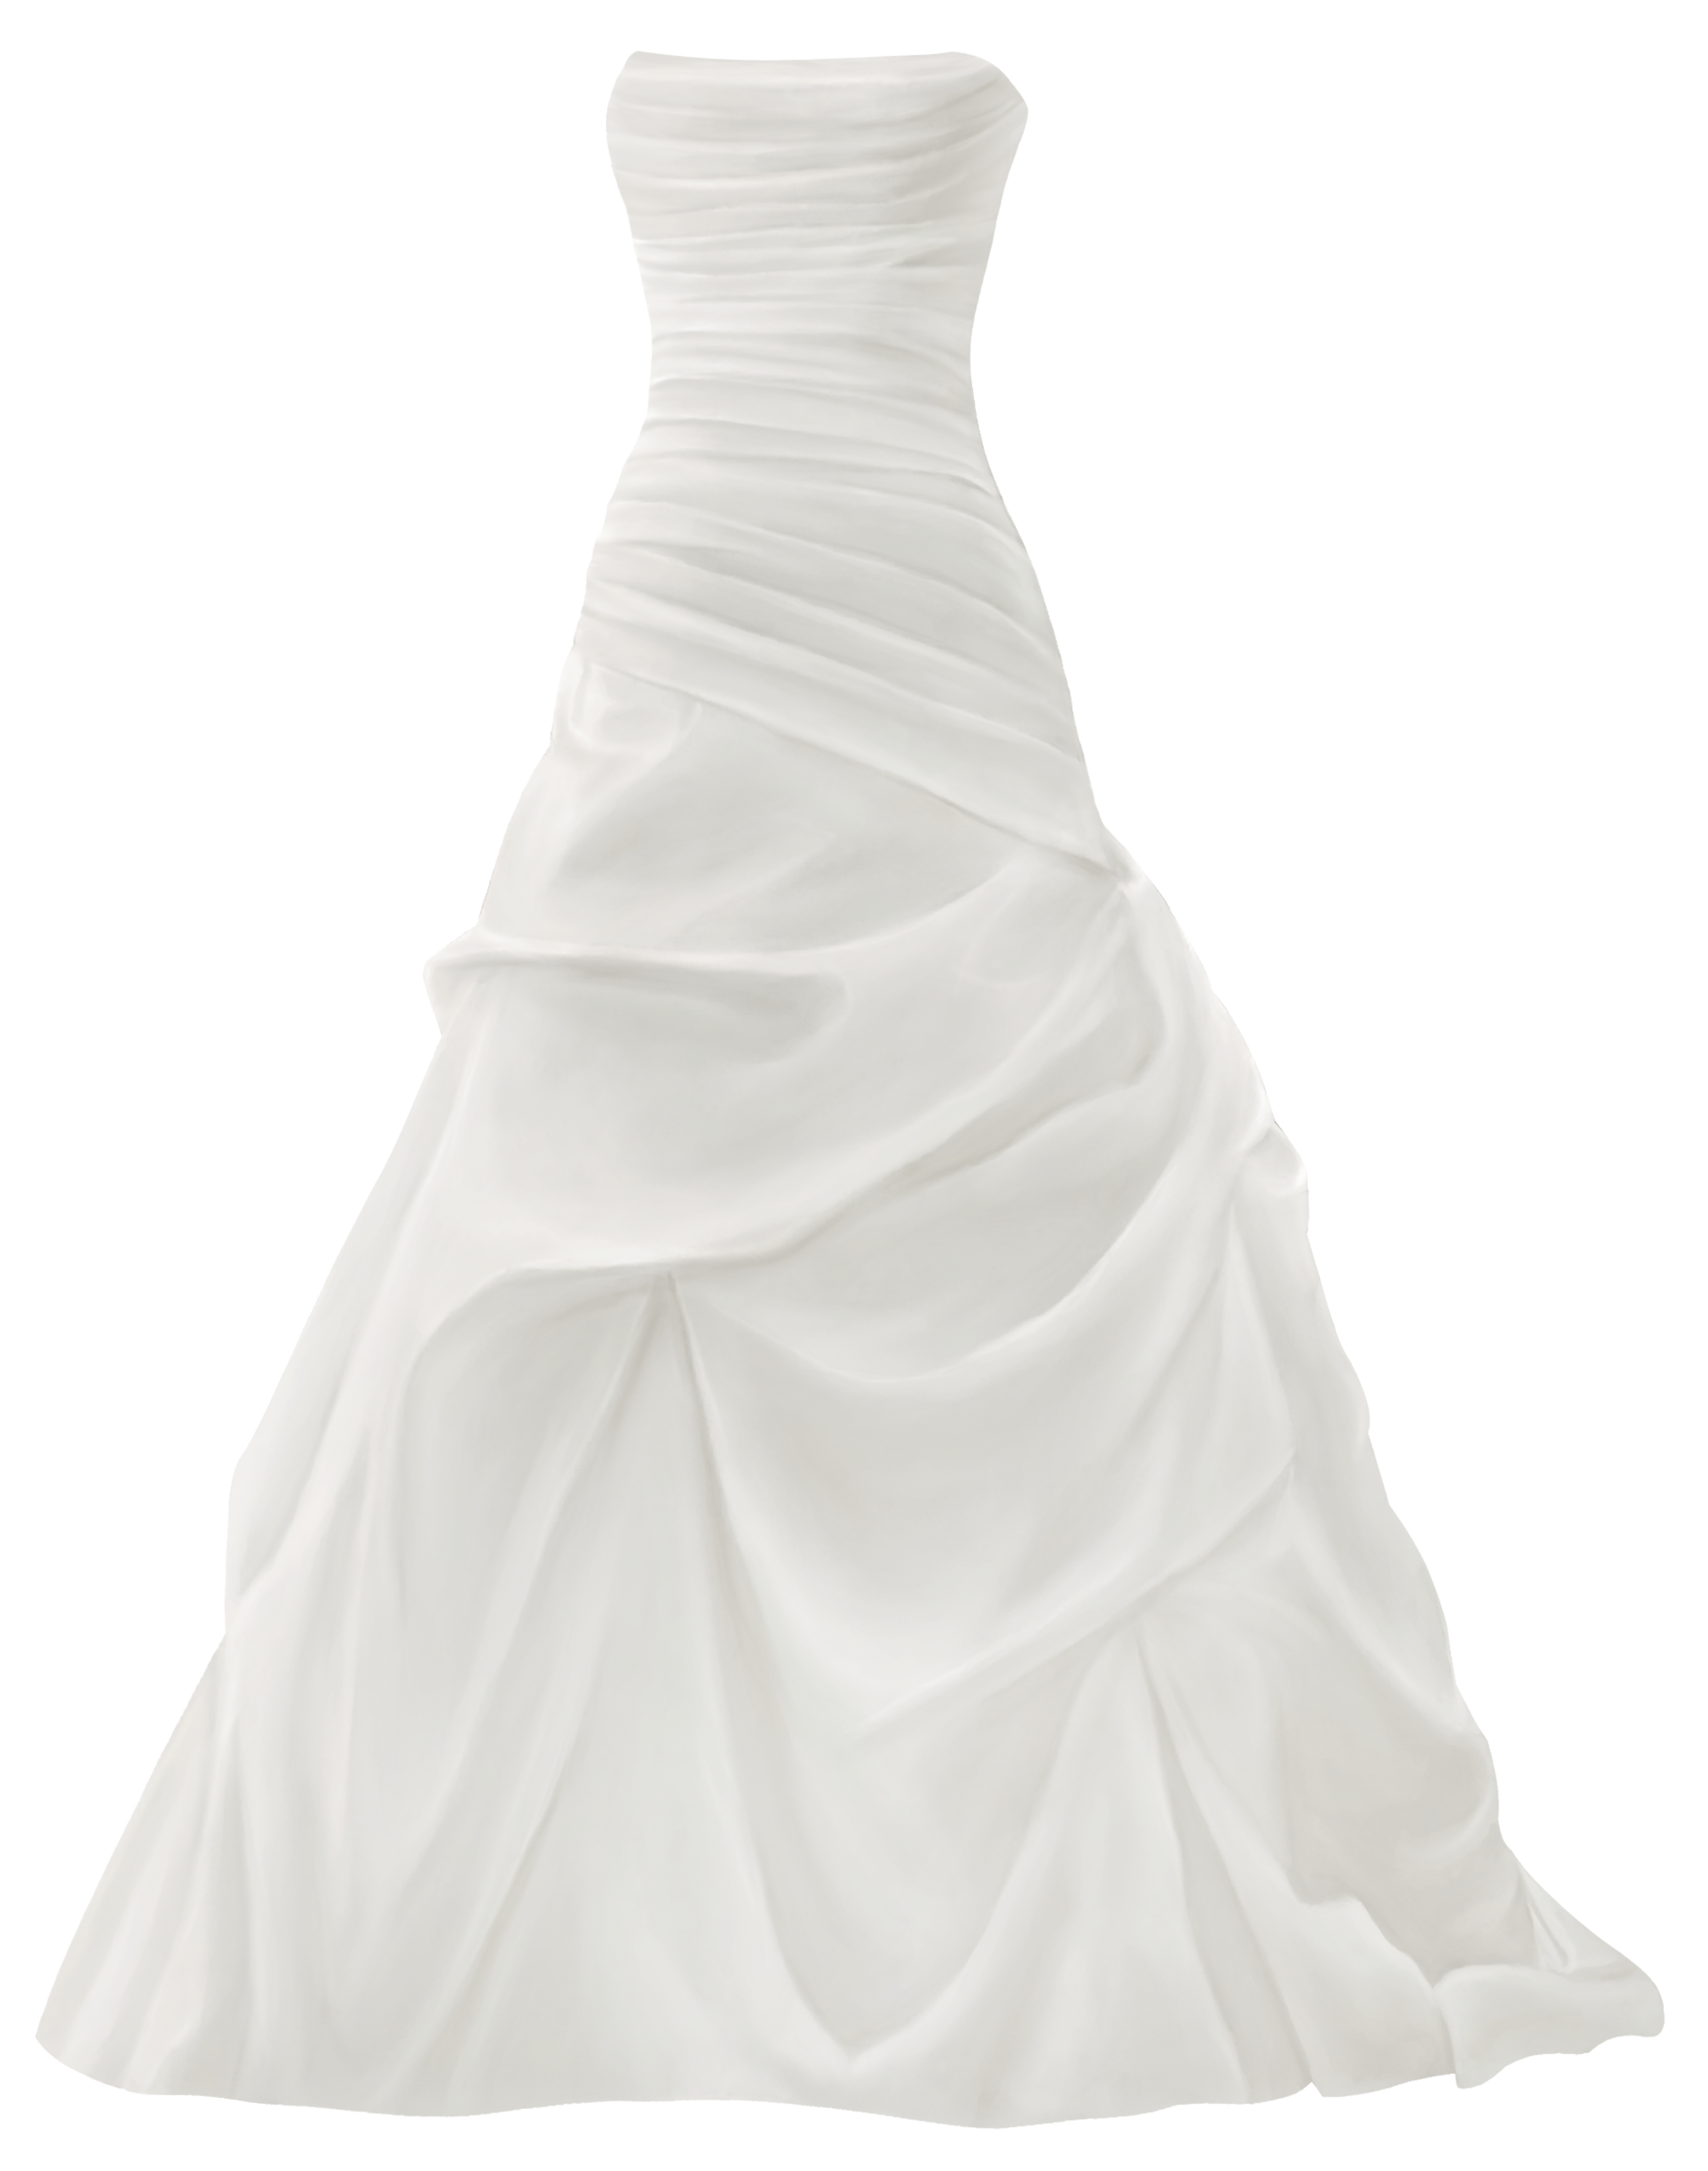 Wedding Dress Clipart Transparent.